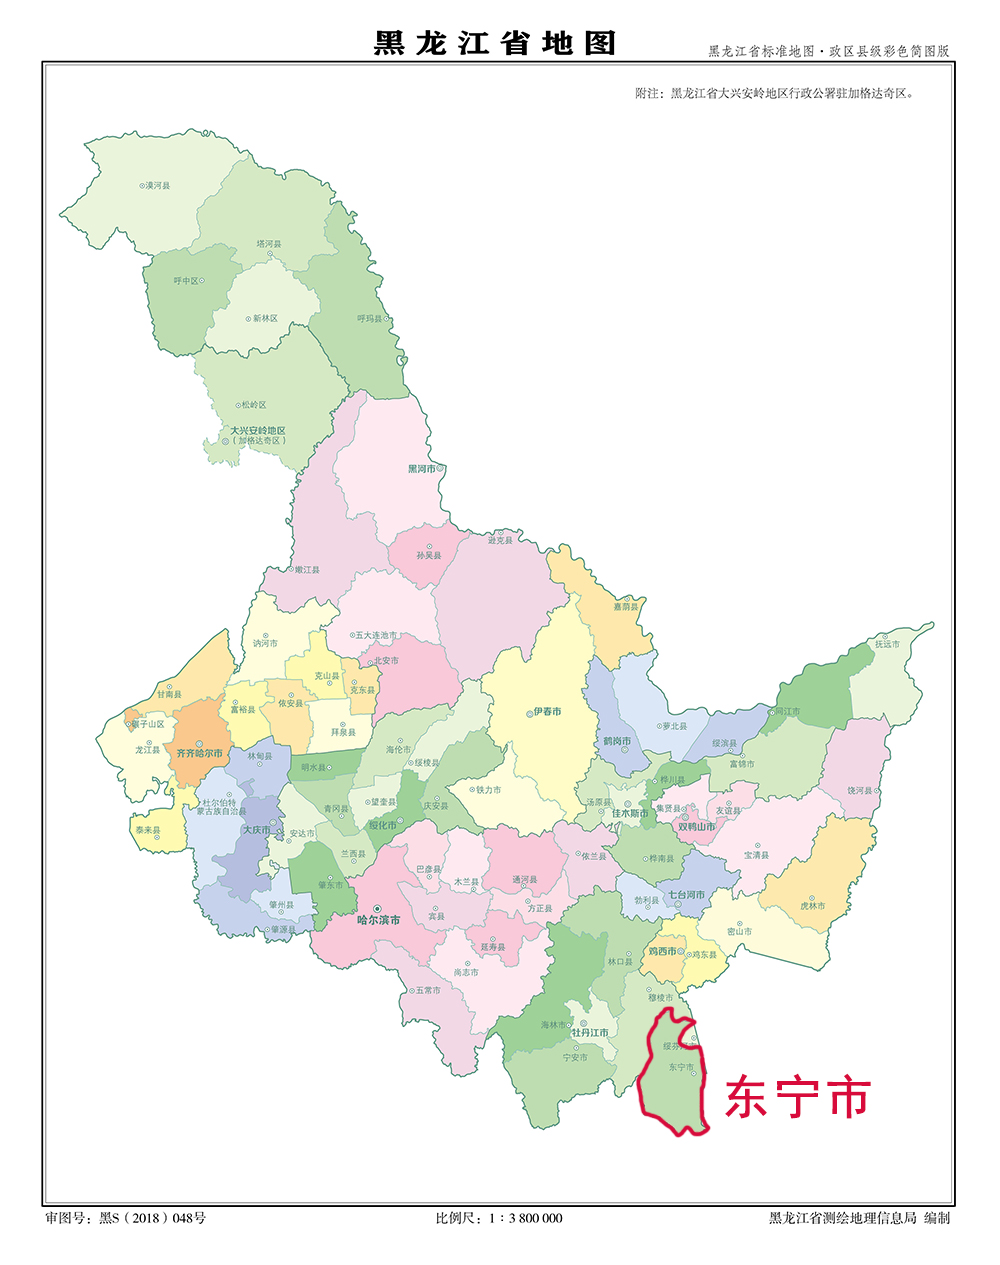 黑龙江省最靠南的县市被誉为塞北江南百姓生活富裕